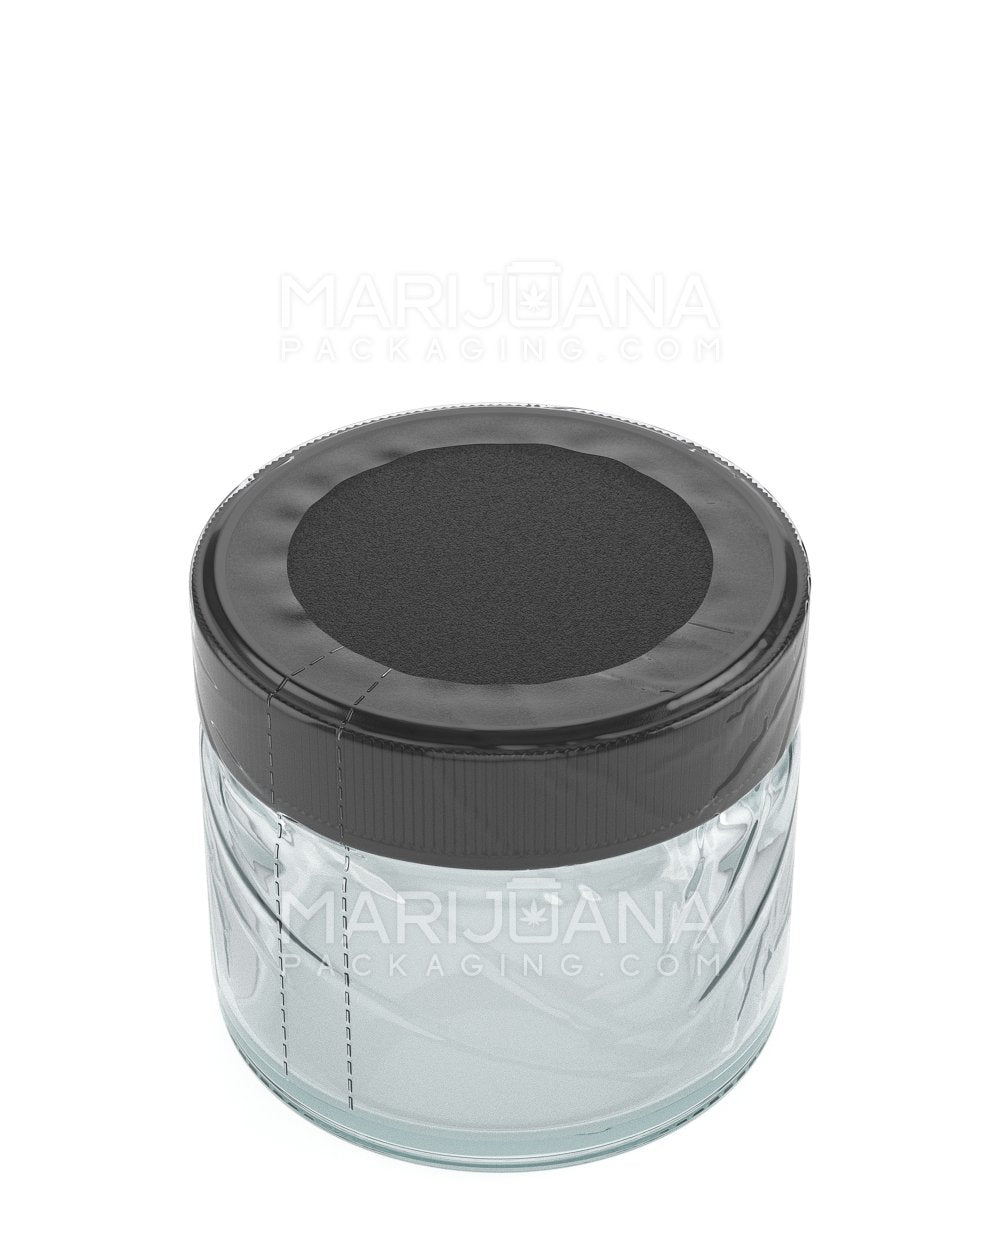 Tamper Evident | Heat Shrink Bands for Jars | 2oz - Clear Plastic - 1000 Count - 2